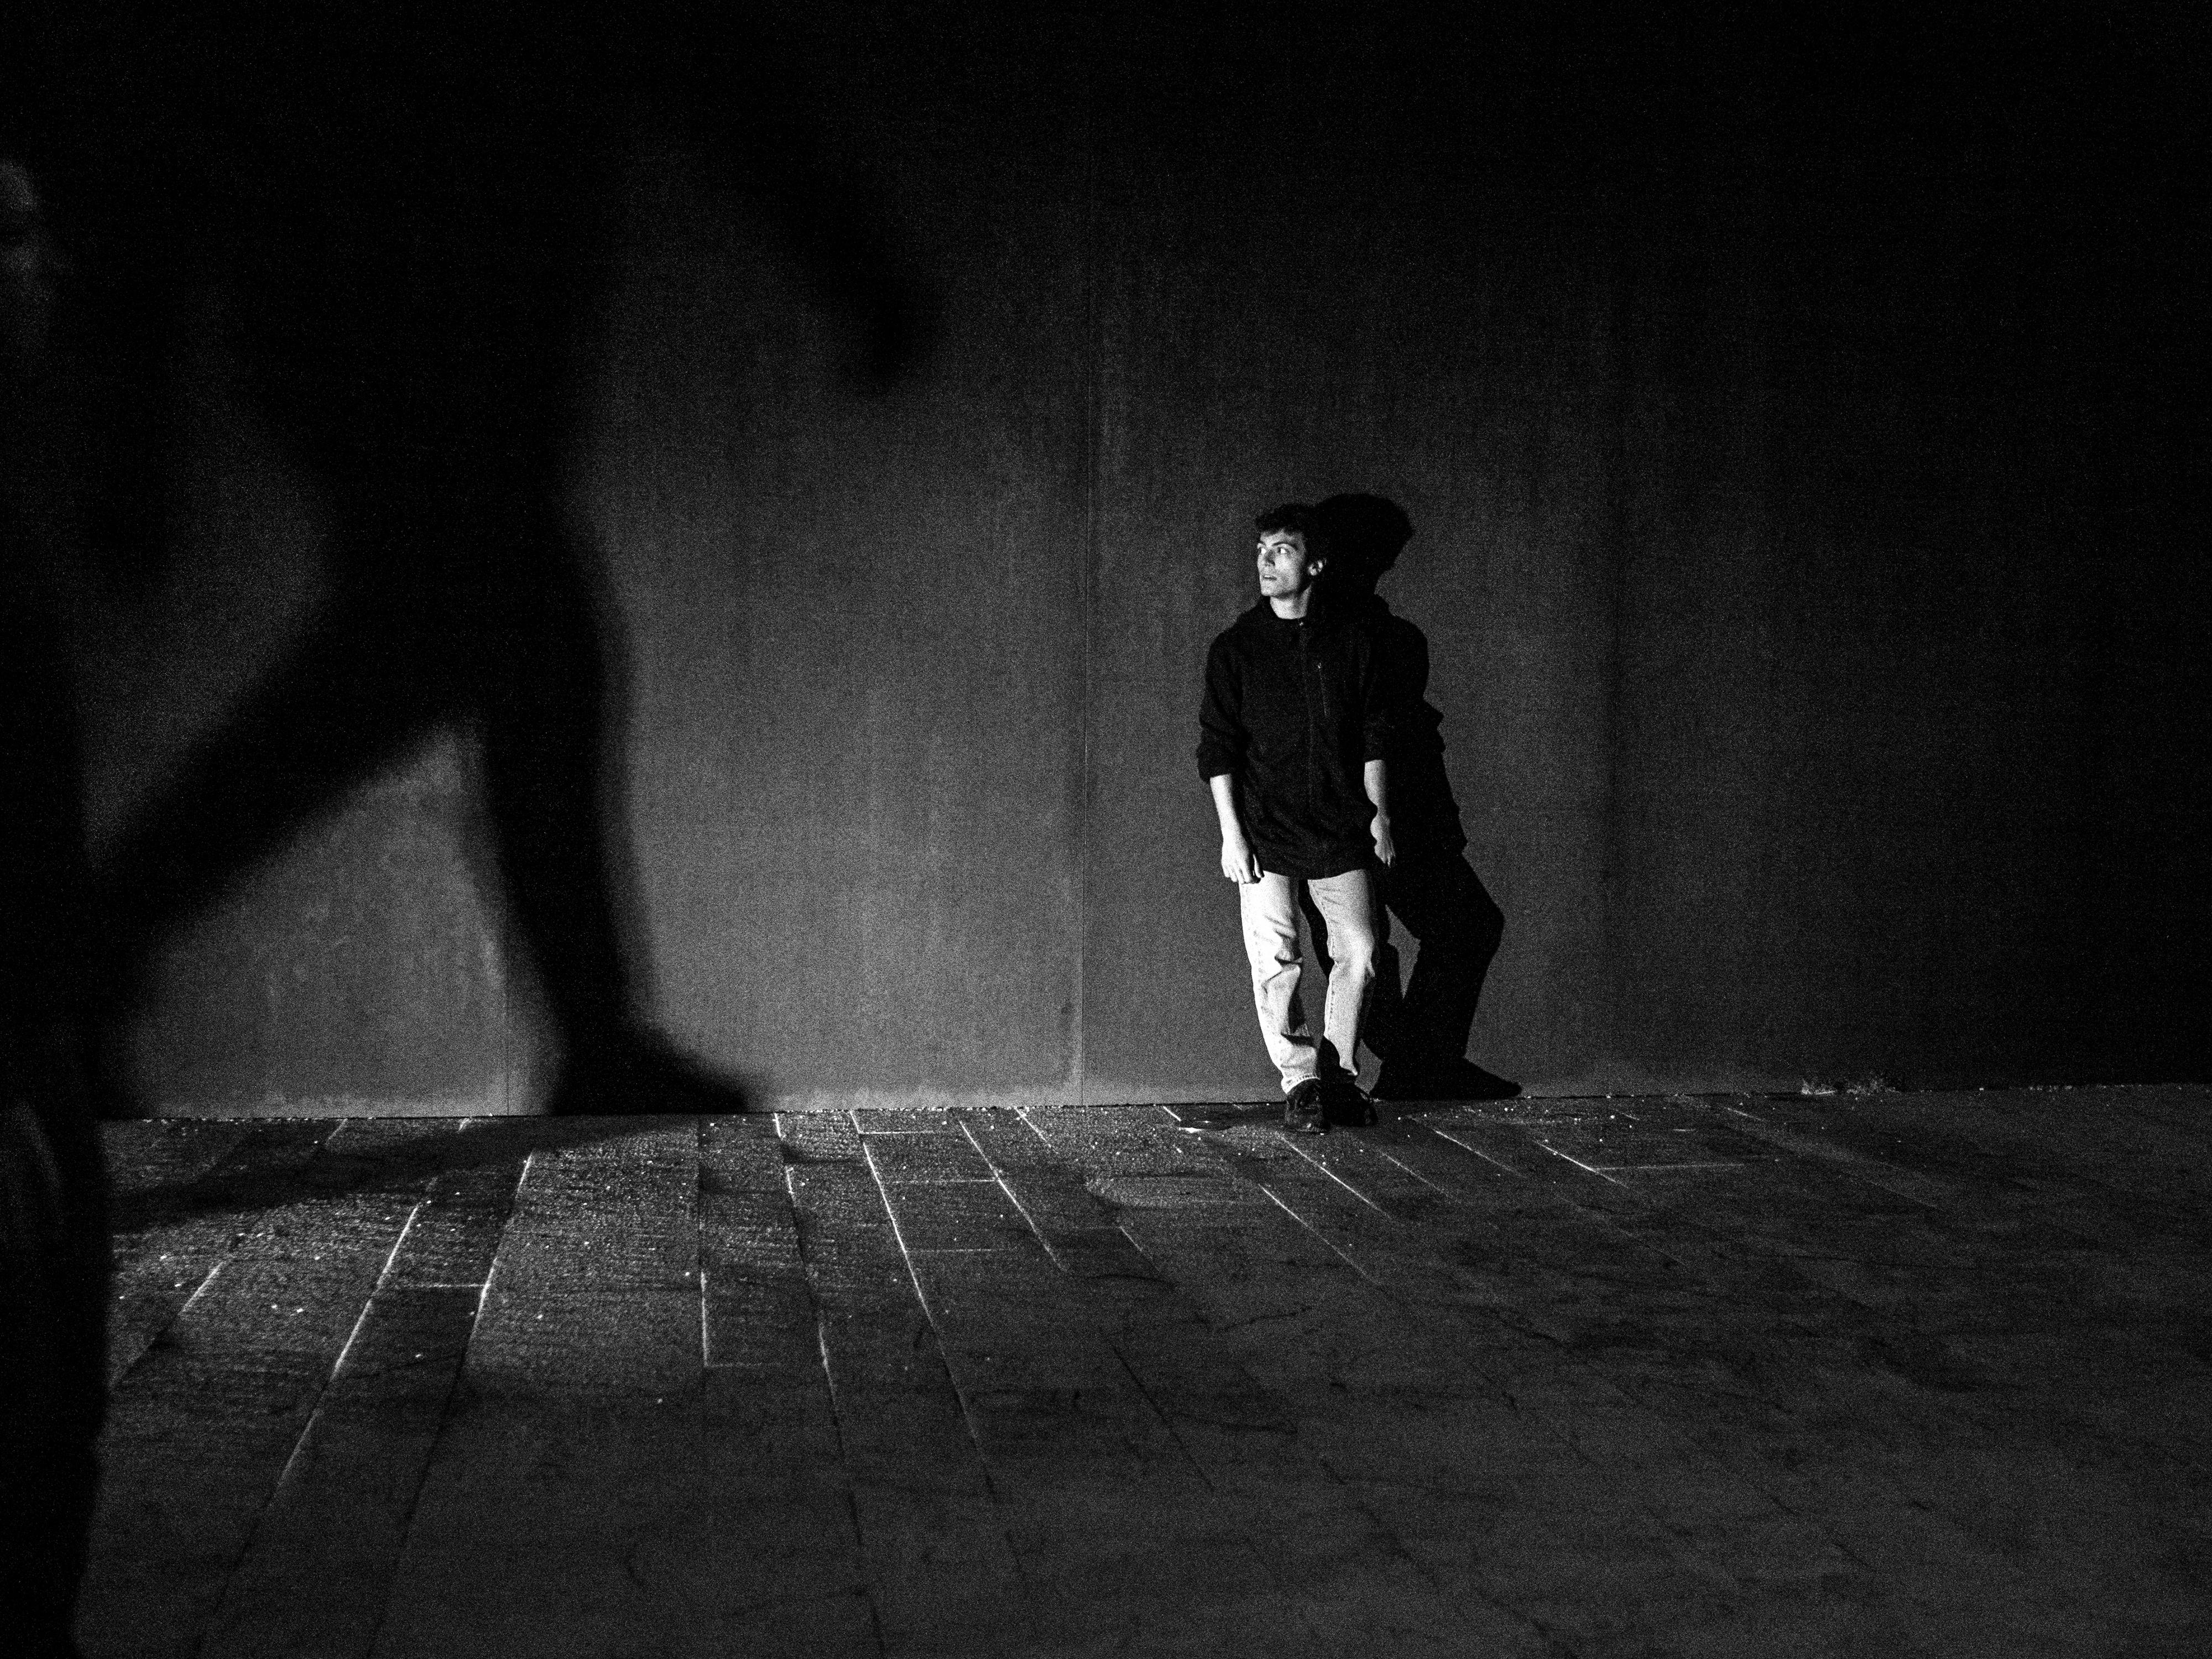 Fotografia in bianco e nero. Un ragazzo, appoggiato ad un muro, è fermo in attesa. Guarda a destra, dove sul proseguo del muro appare grande l'ombra di un corpo che cammina.